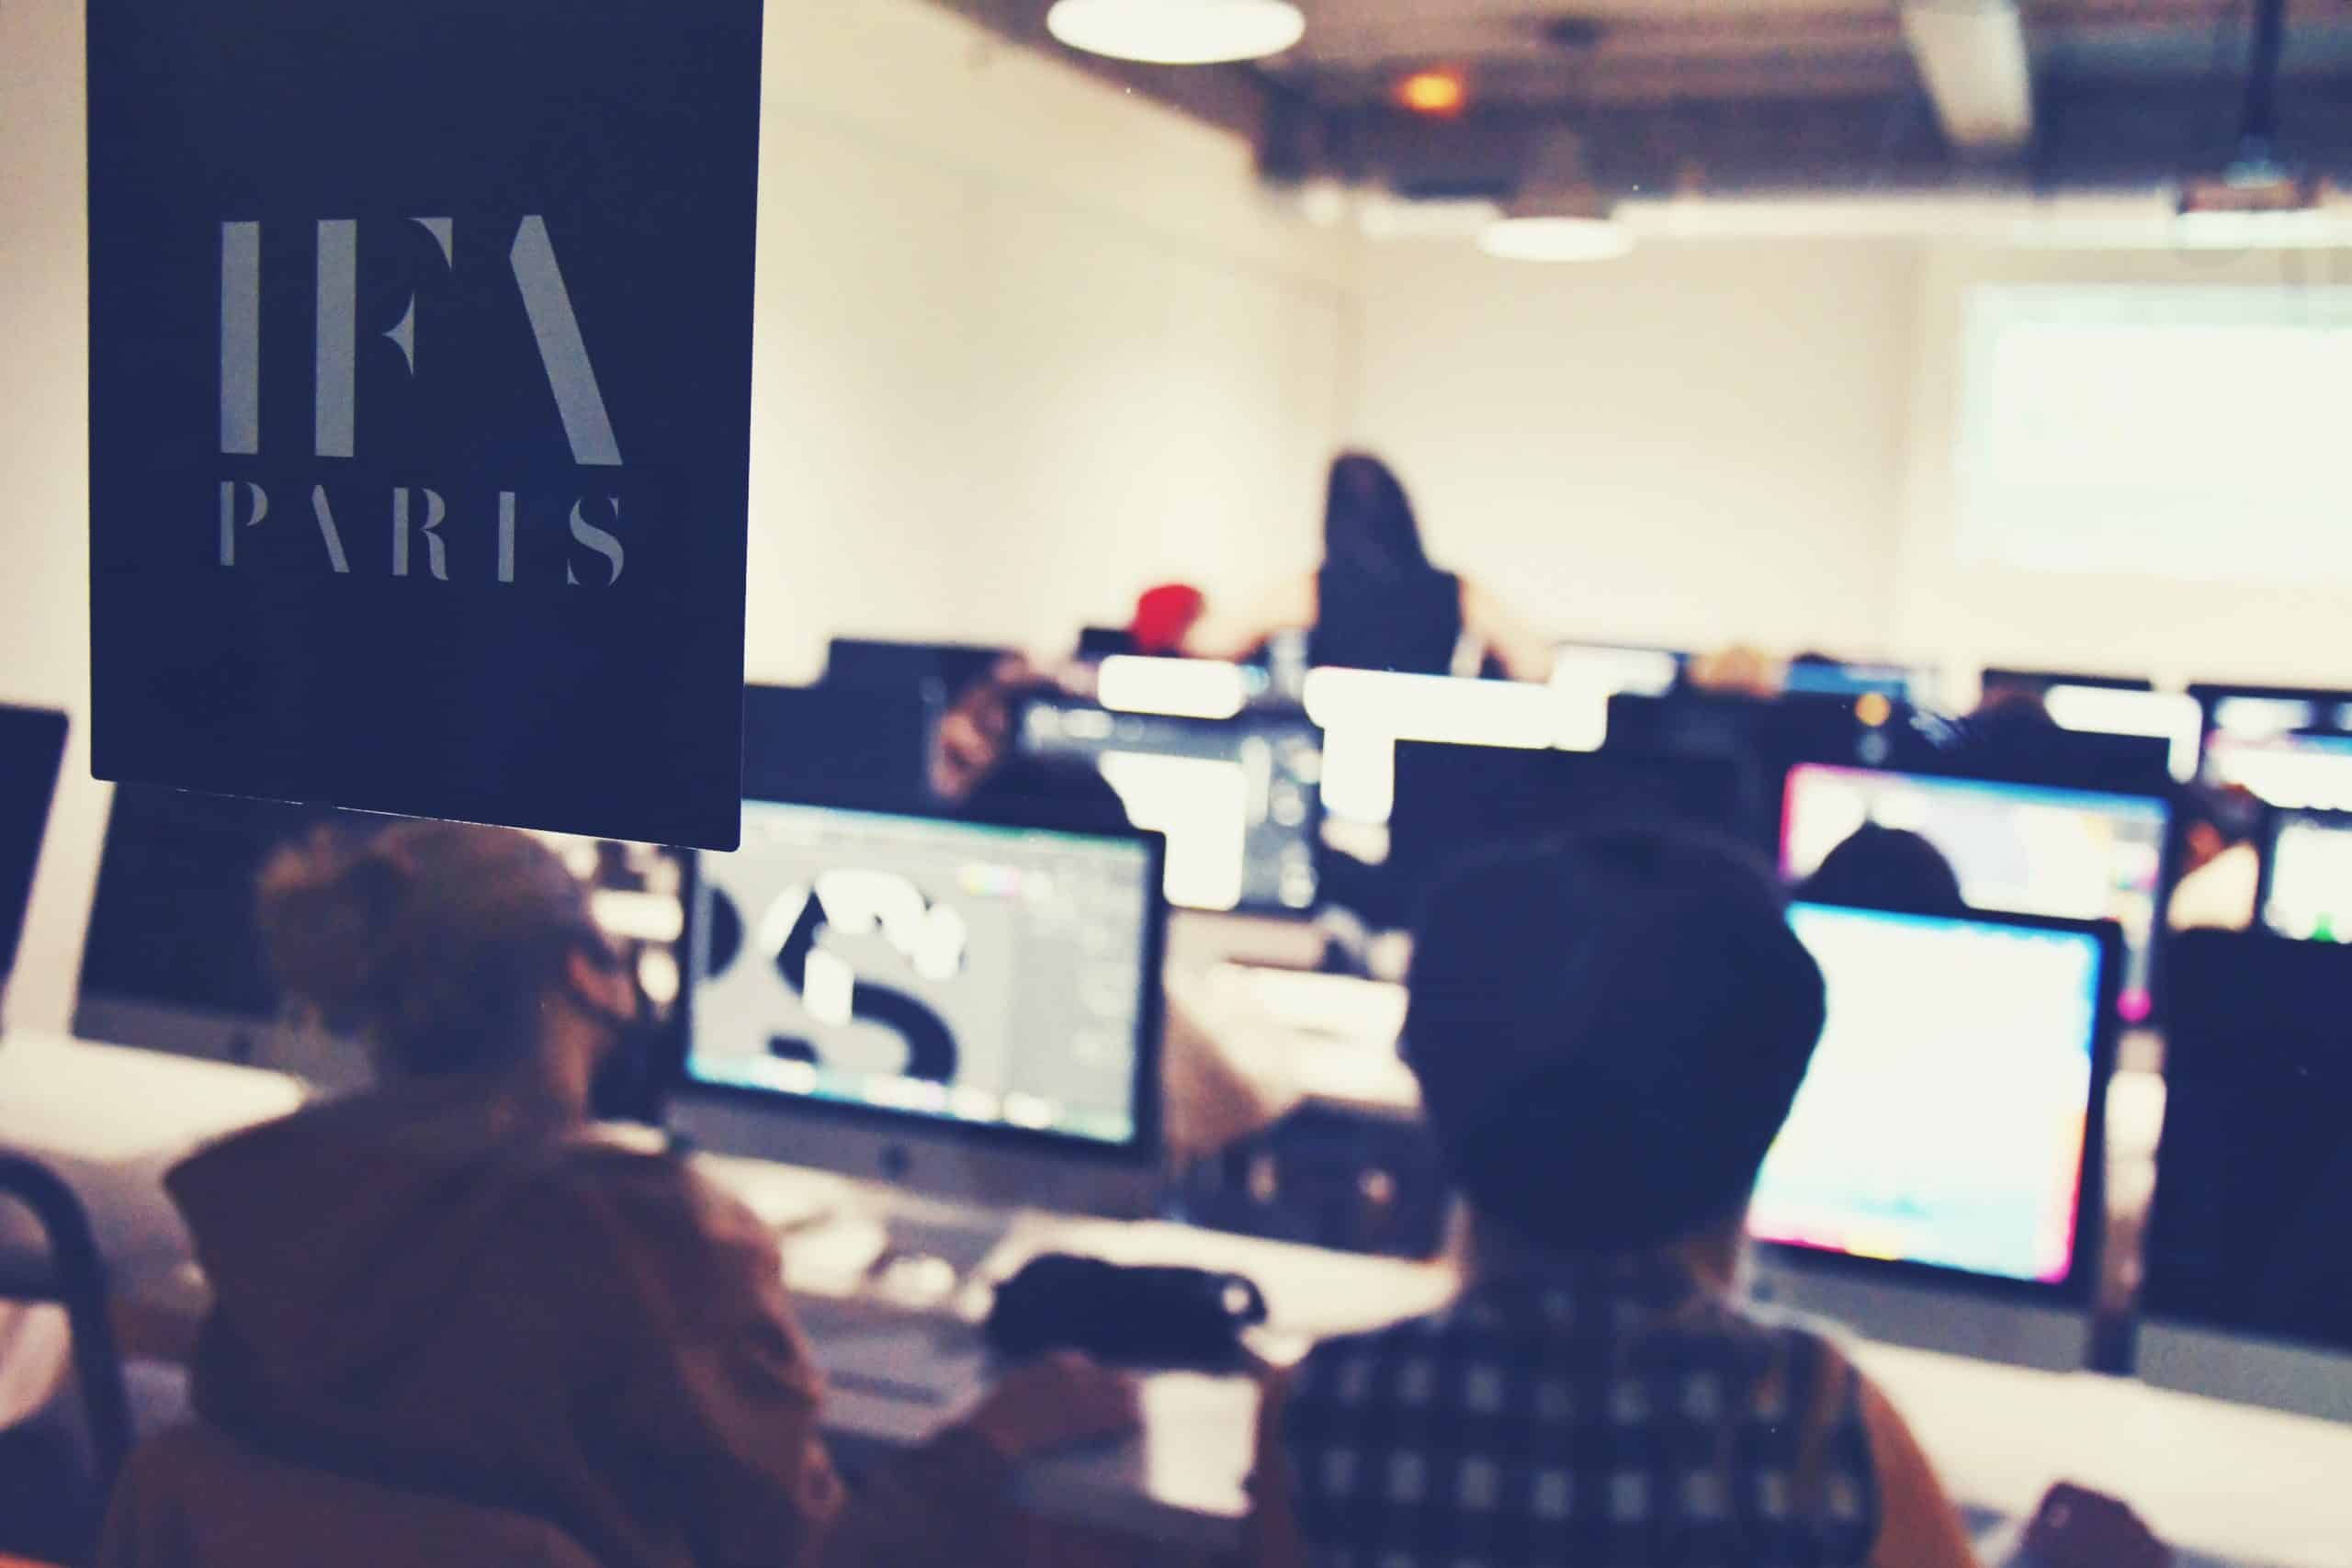 IFA Paris Students Digital Design Course